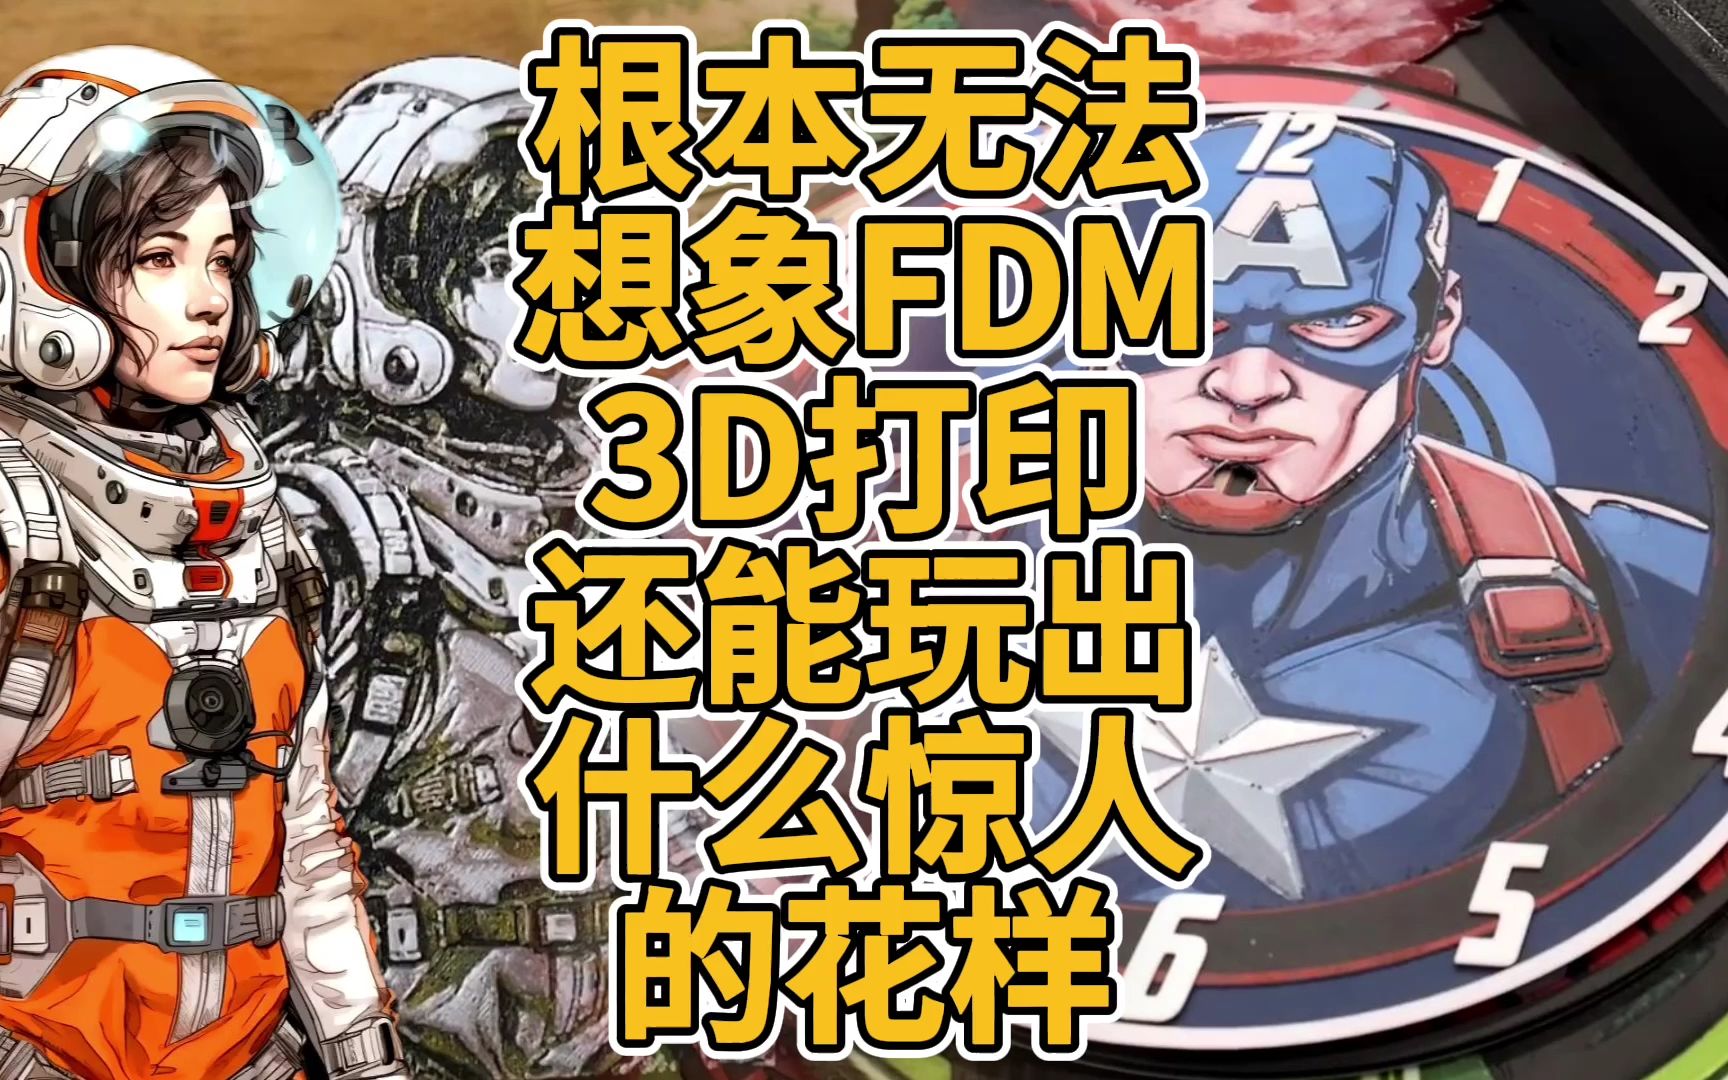 根本无法想象FDM 3D打印还能玩出什么惊人的花样